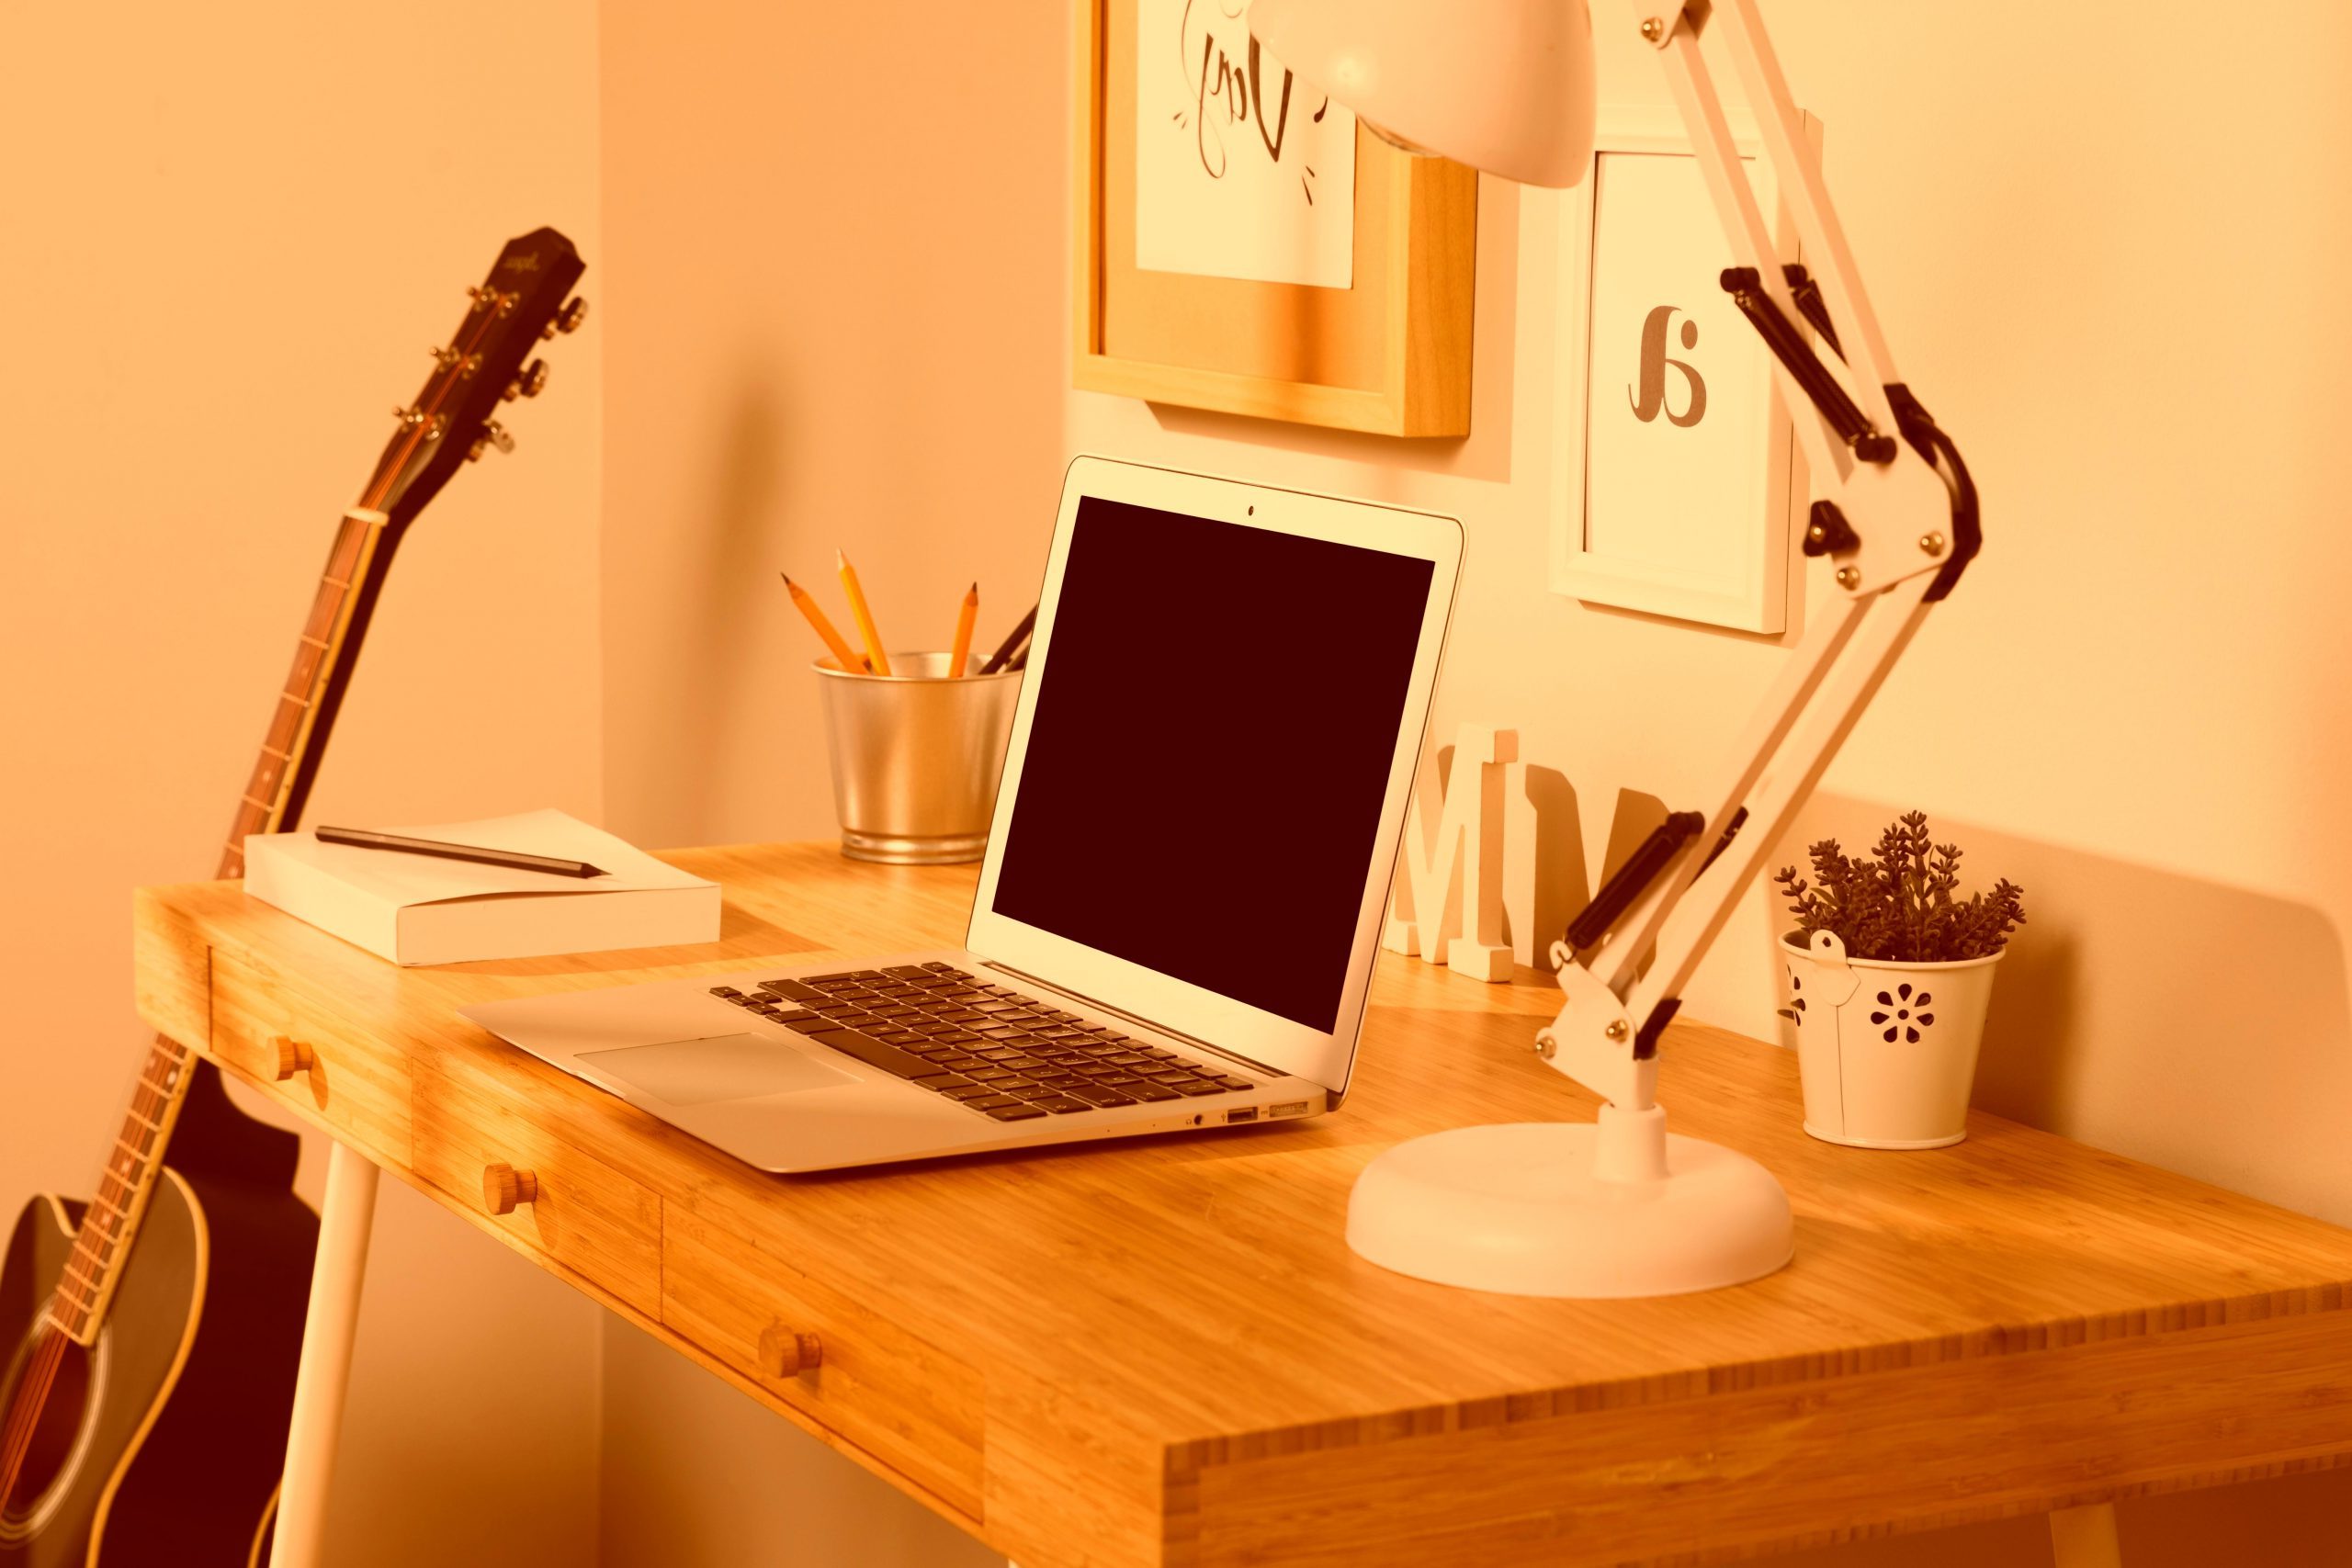 Escritorio con portátil , flexo y material de oficina, con guitarra al fondo apoyada en la mesa. Imagen de tonos anaranjados.